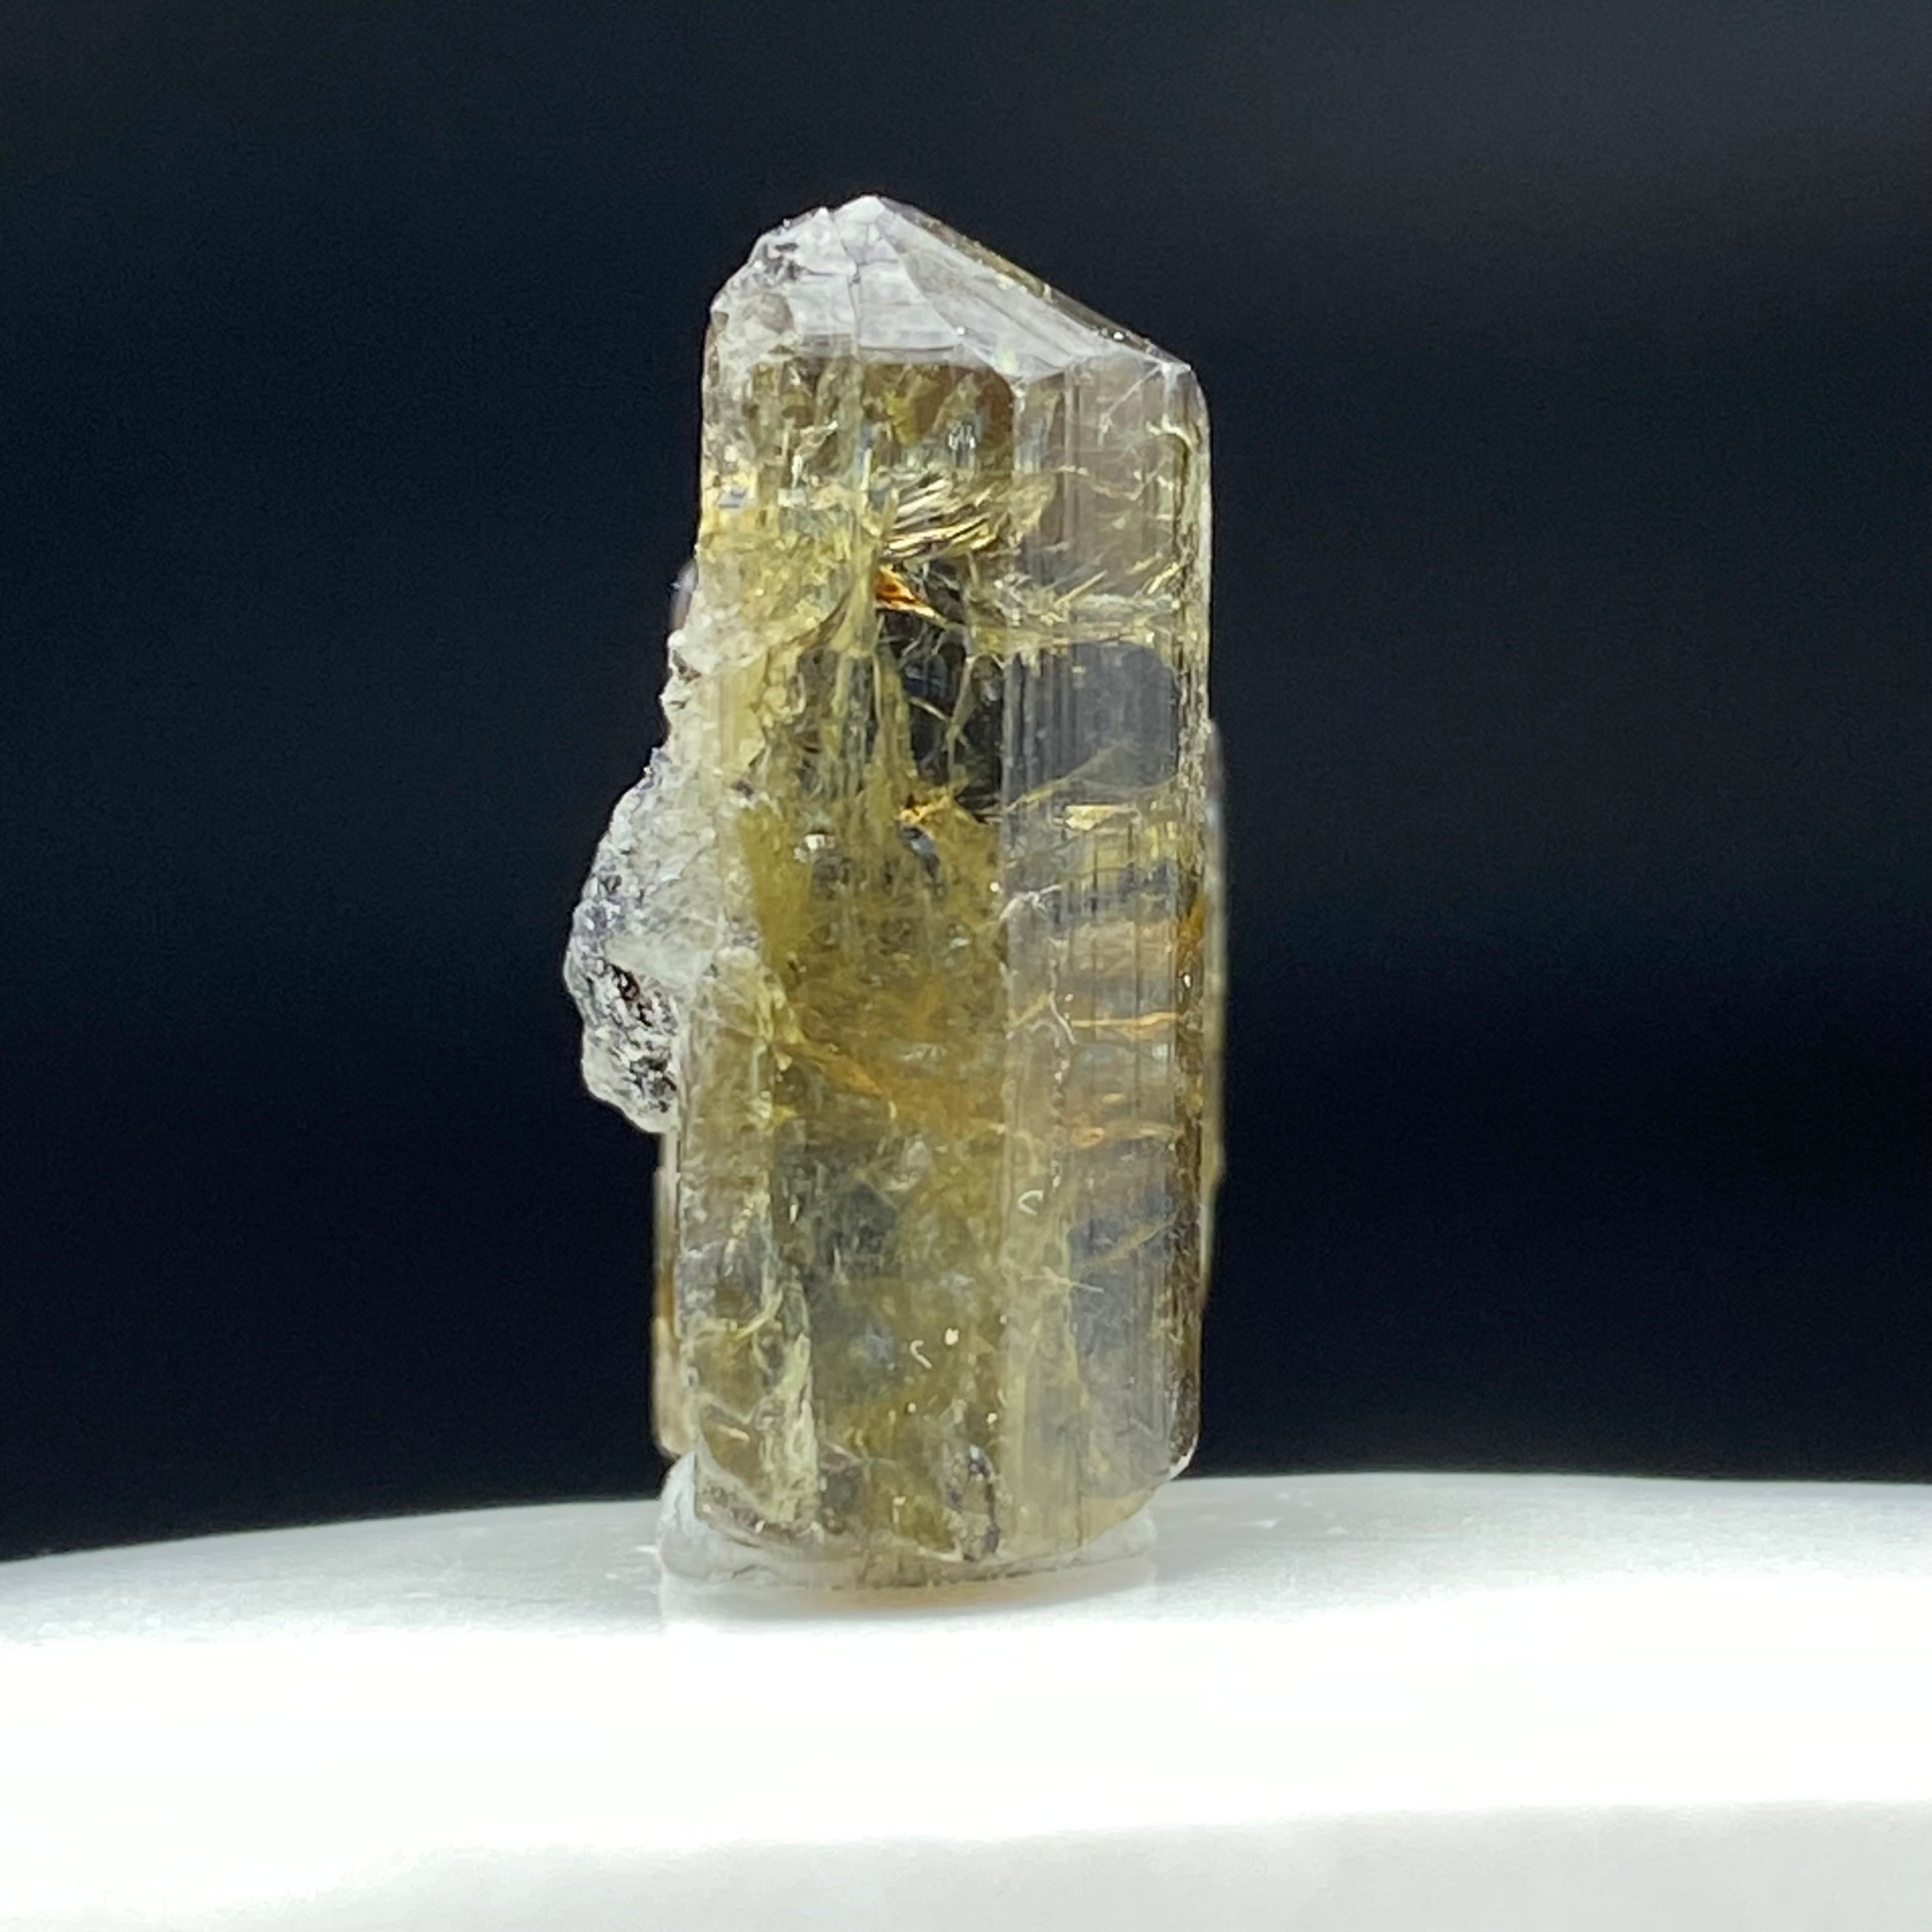 Real Tanzanite Crystal - 010